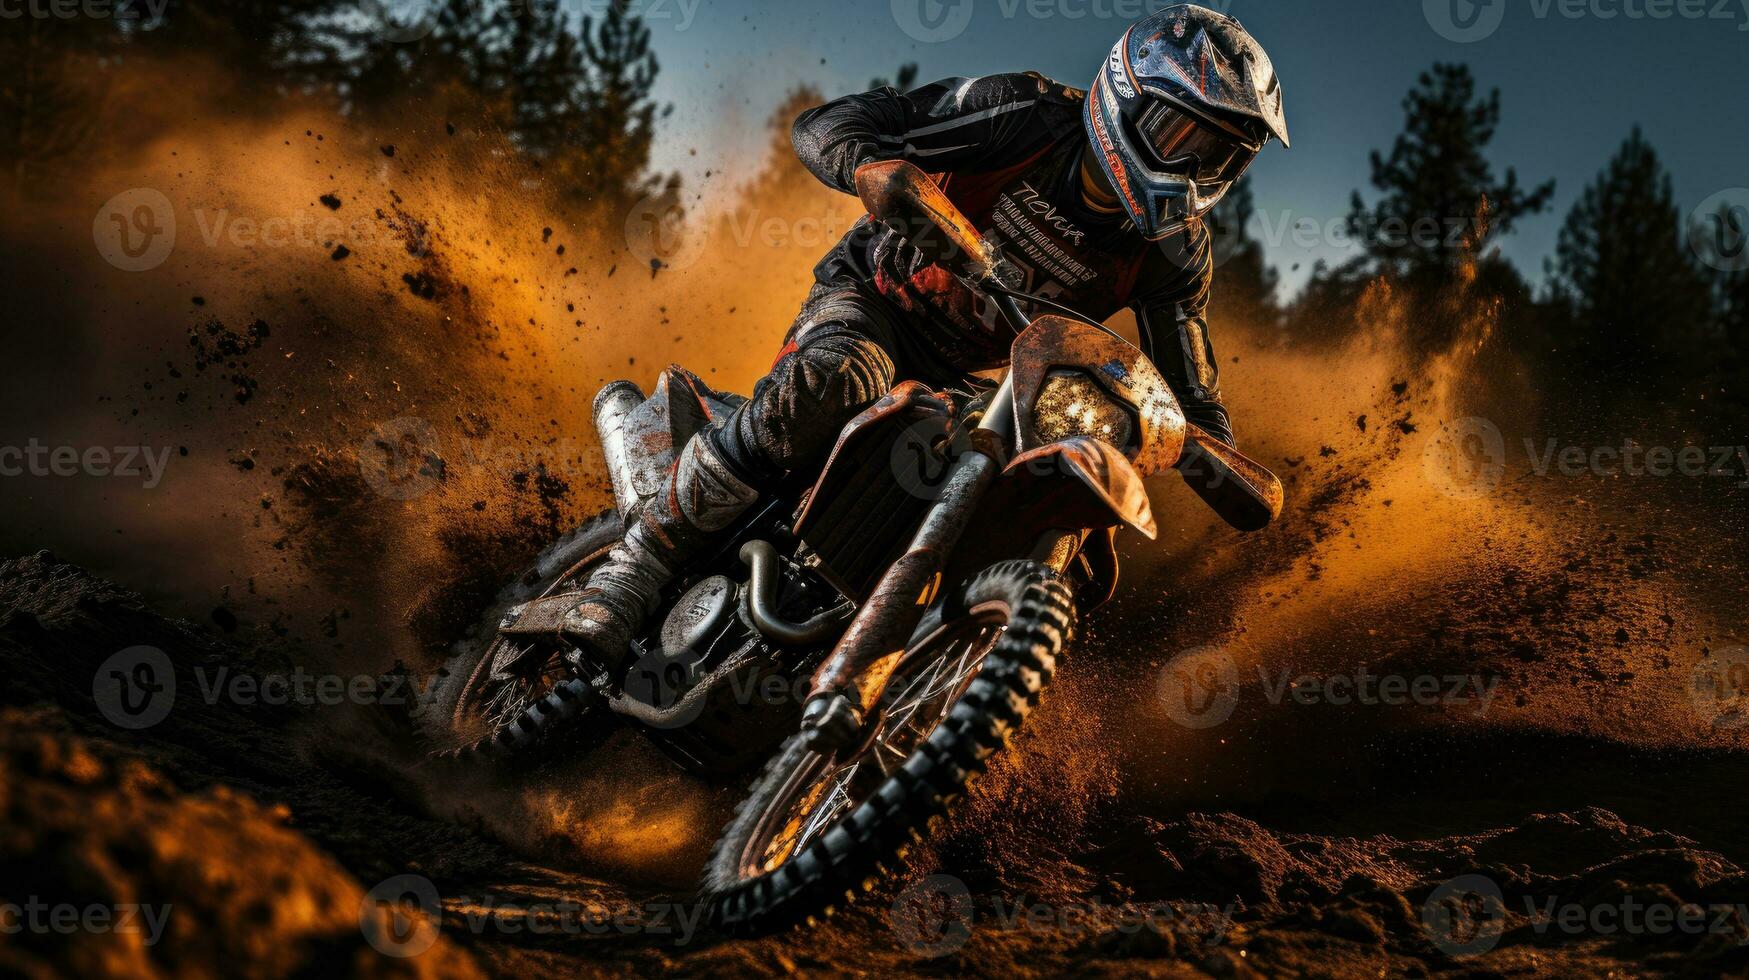 motocross jinete crea un lote de polvo y suciedad foto